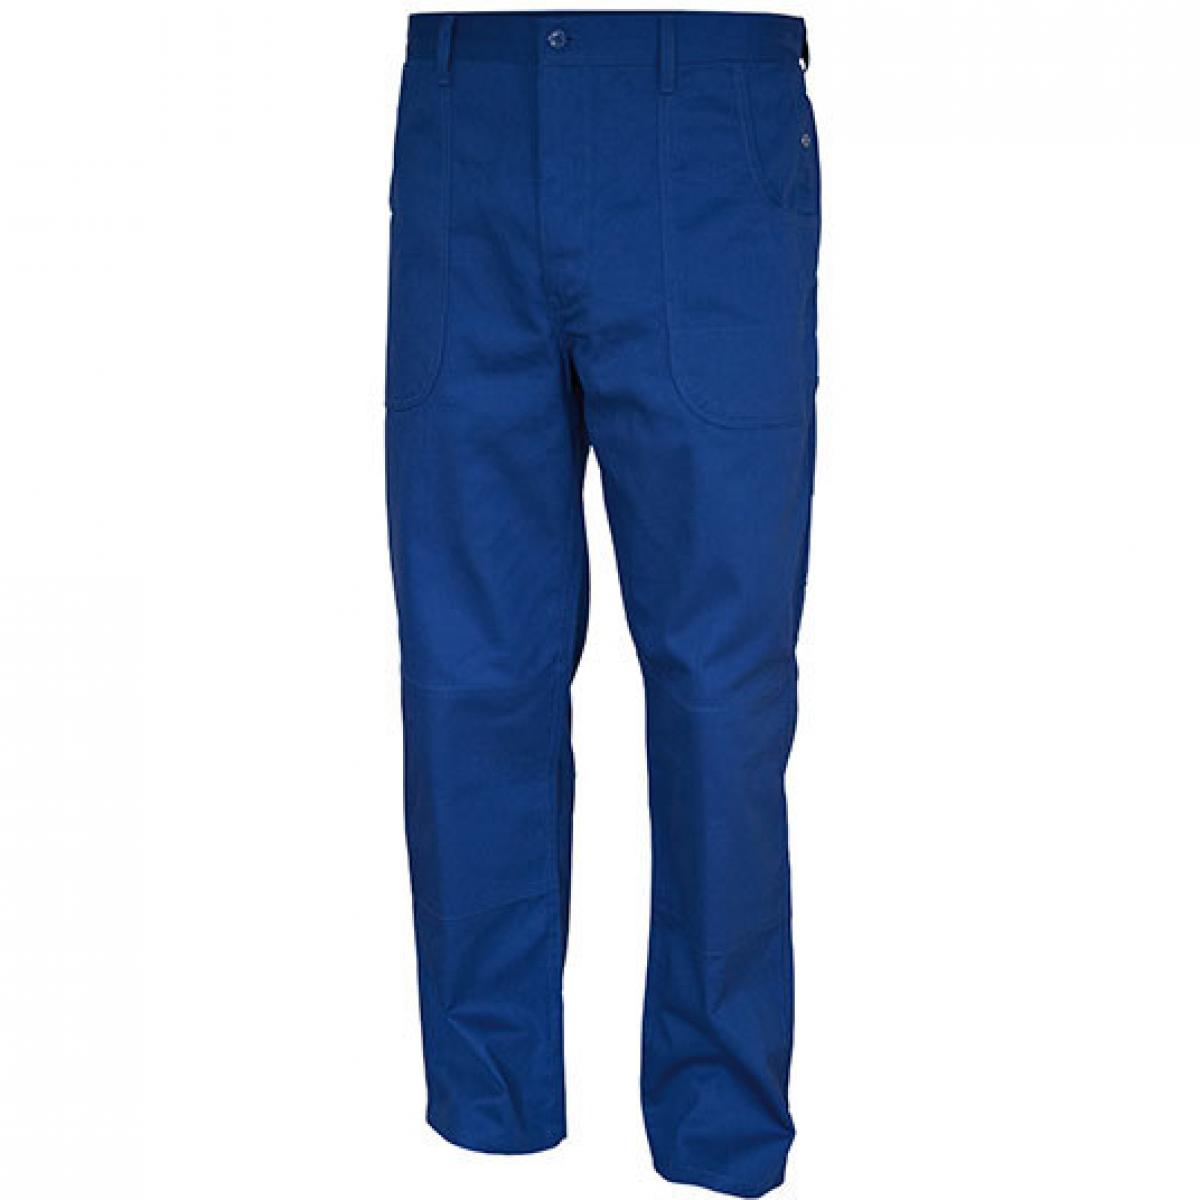 Hersteller: Carson Classic Workwear Herstellernummer: KTH709H Artikelbezeichnung: Herren Classic Work Pants Arbeitshose / Bei 60 Grad waschbar Farbe: Royal